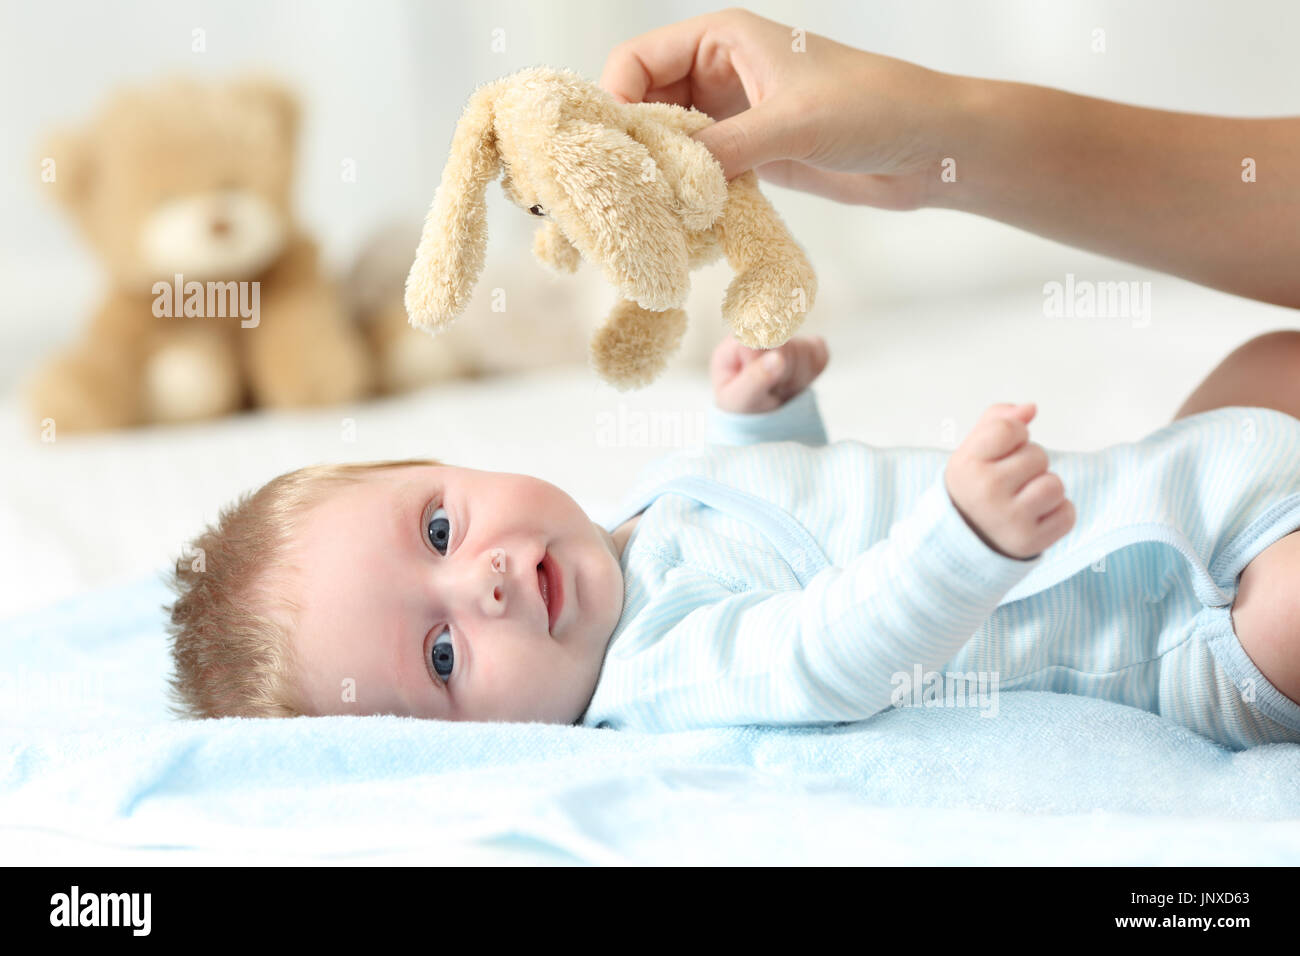 Mère main tenant un ours en peluche et son bébé vous regarde sur un lit Banque D'Images